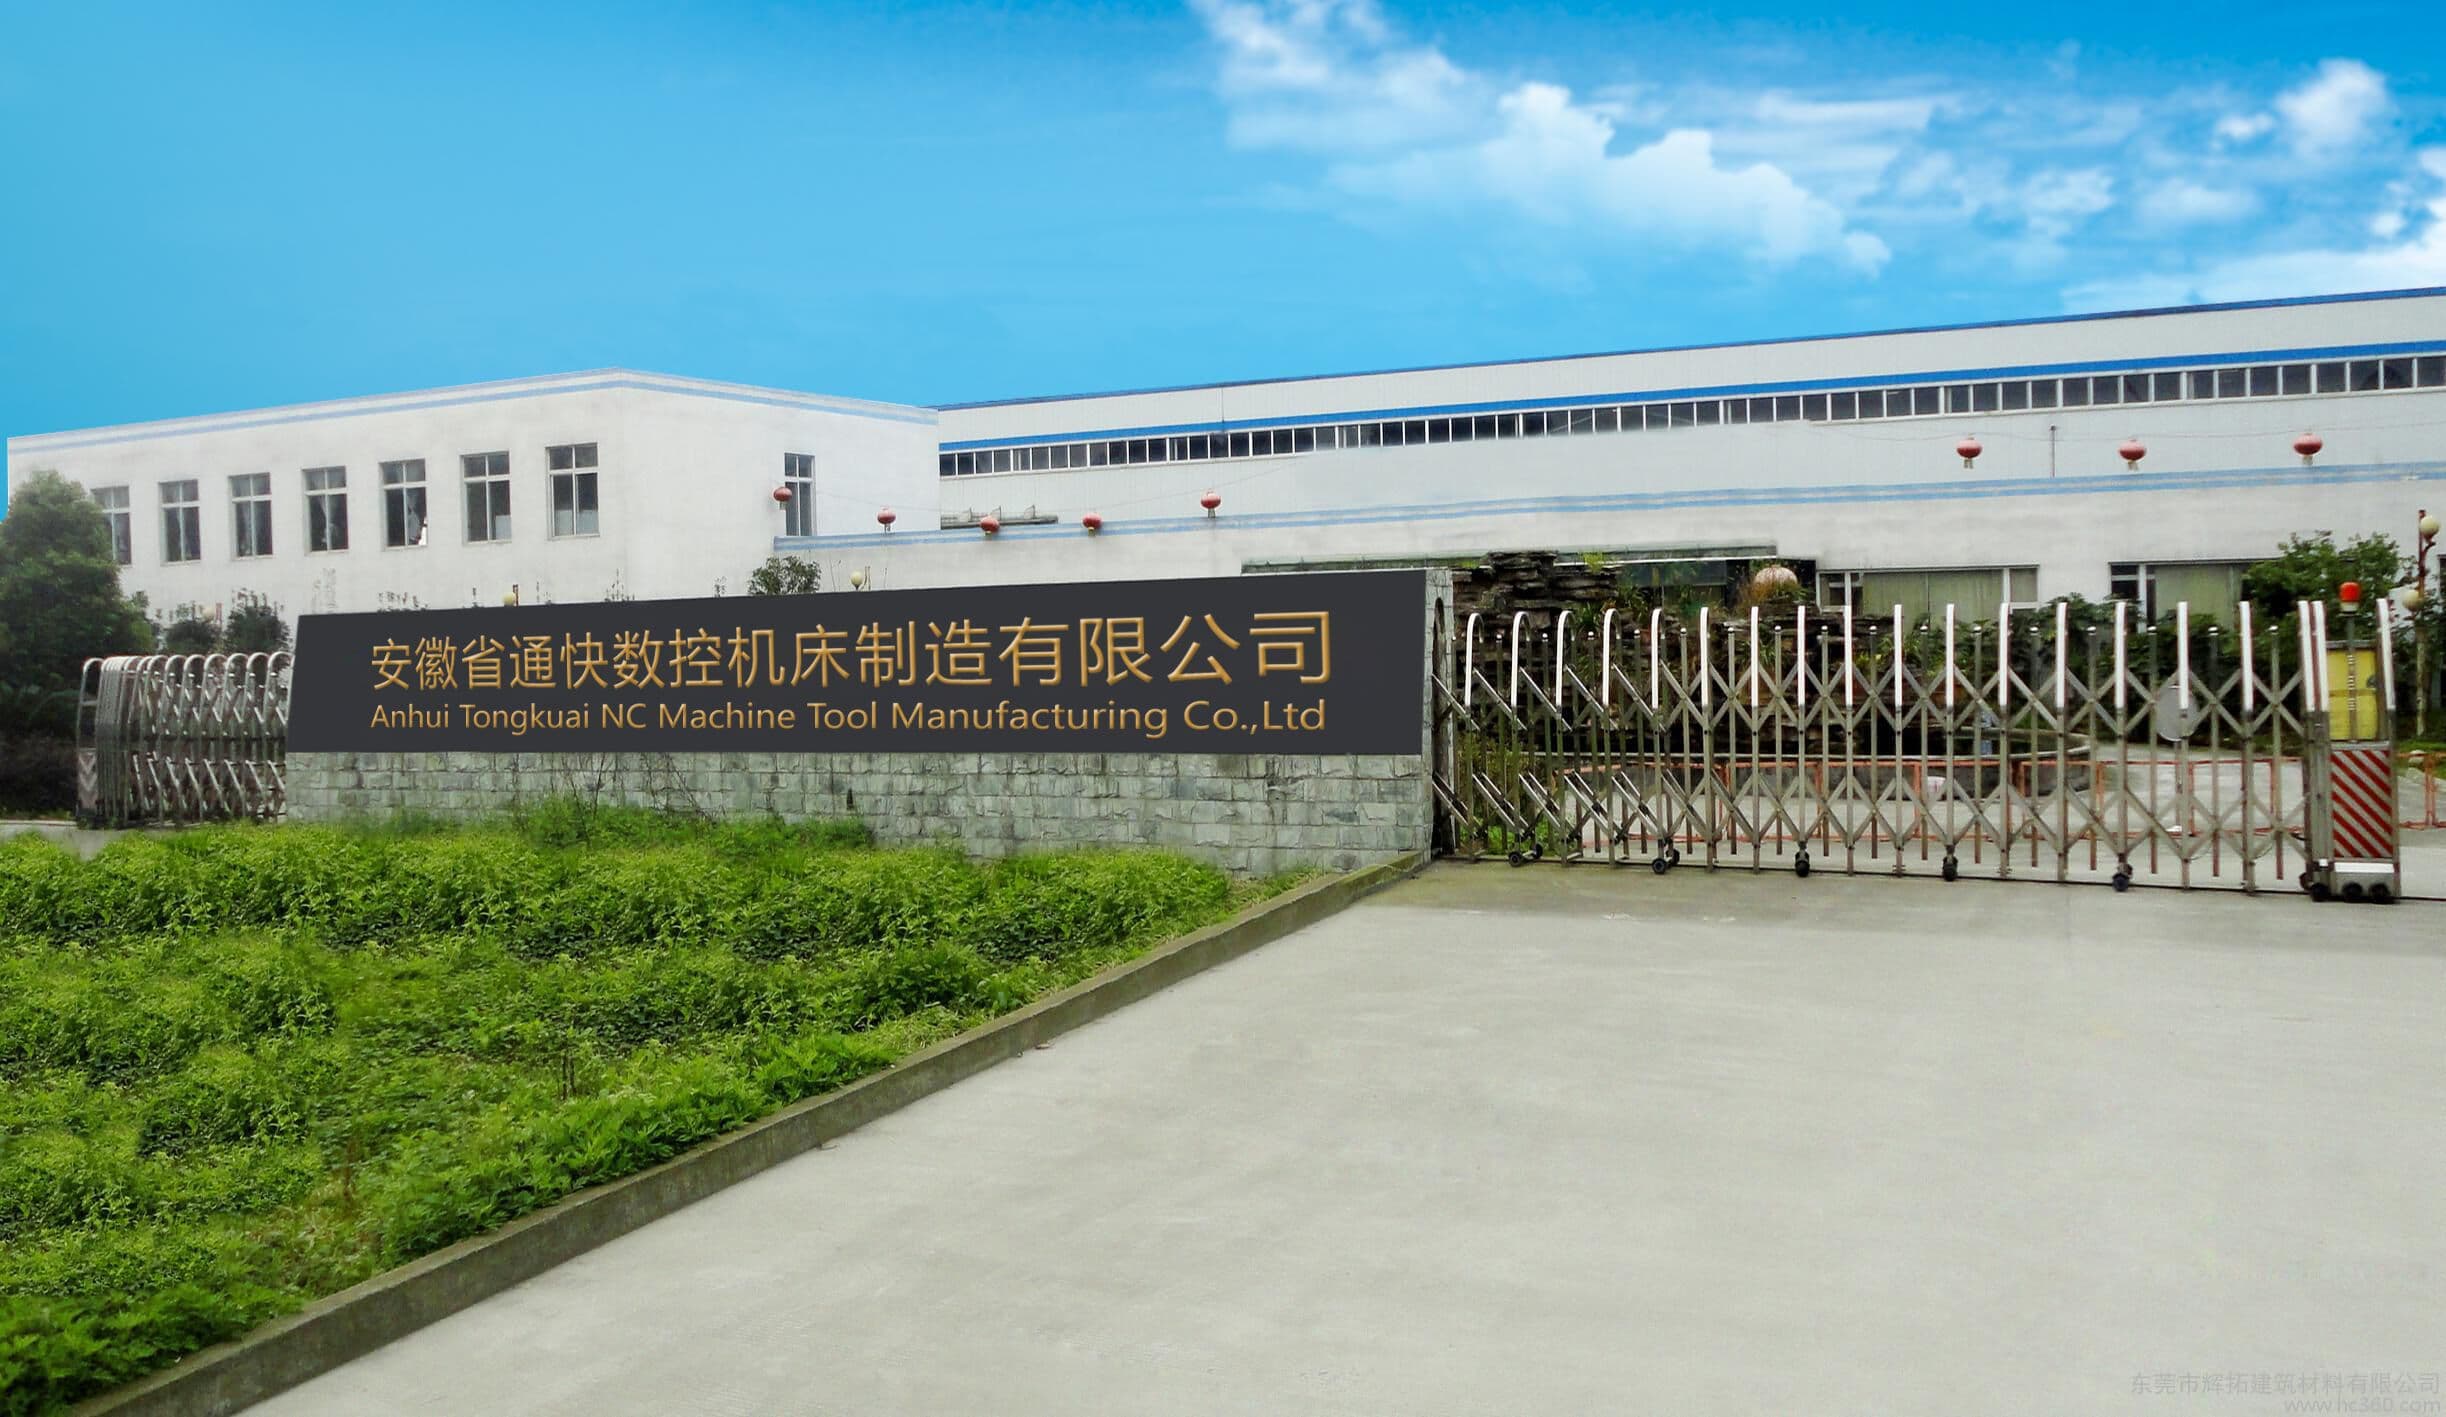 Anhui Tongkuai NC Machine Tool Manufacturing Co.,Ltd.